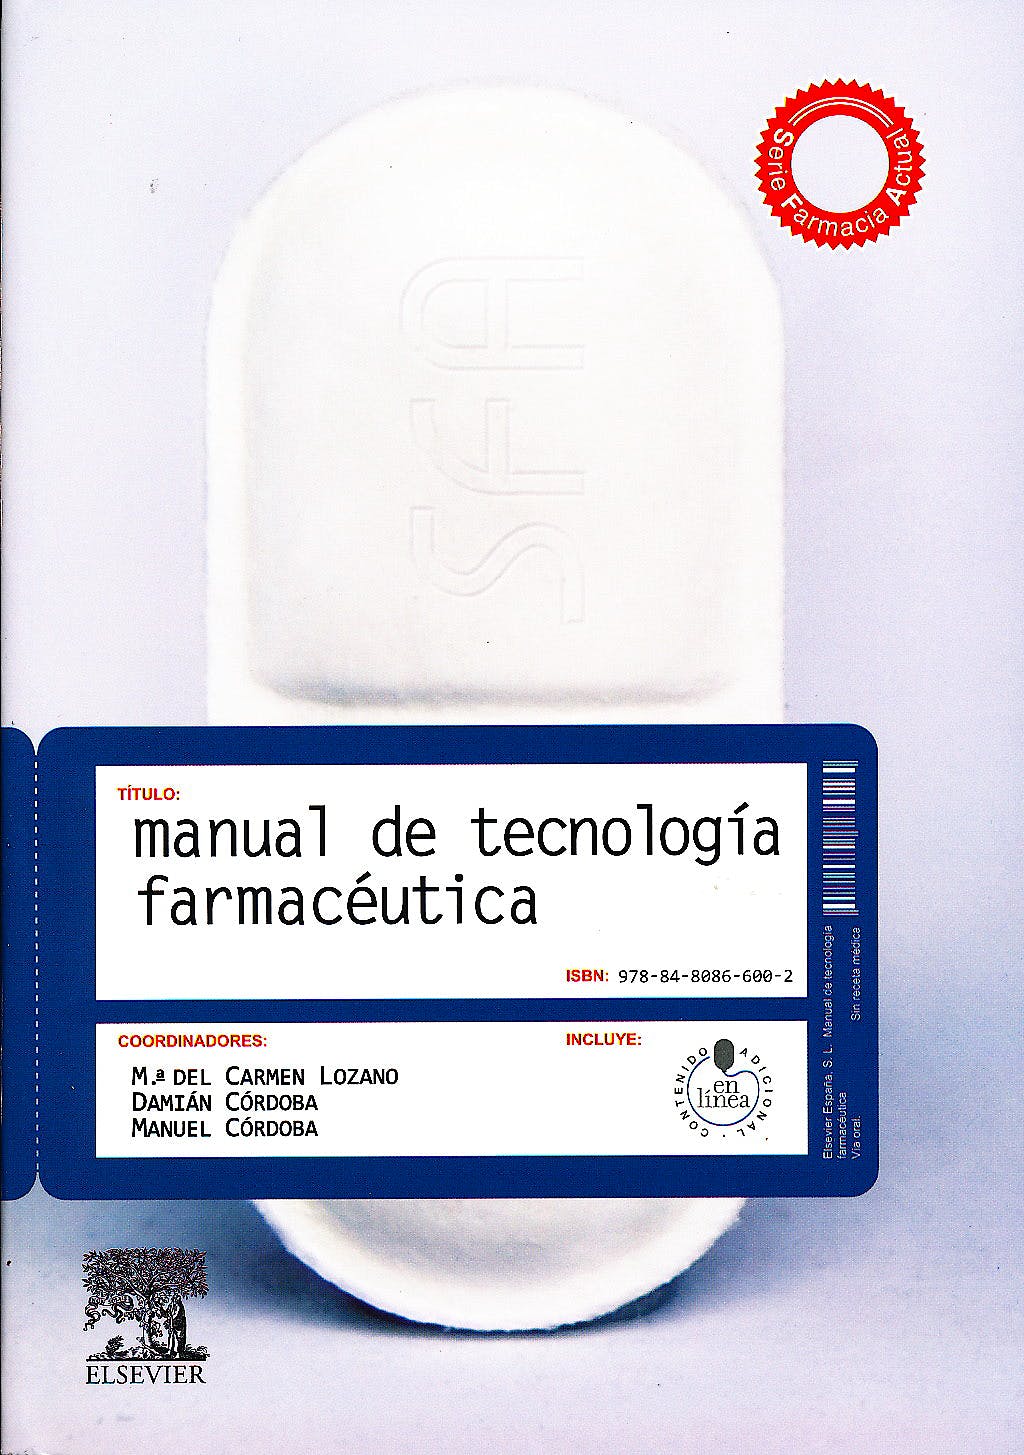 LOZANO, M.ª C., MANUAL DE TECNOLOGÍA FARMACÉUTICA © 2012